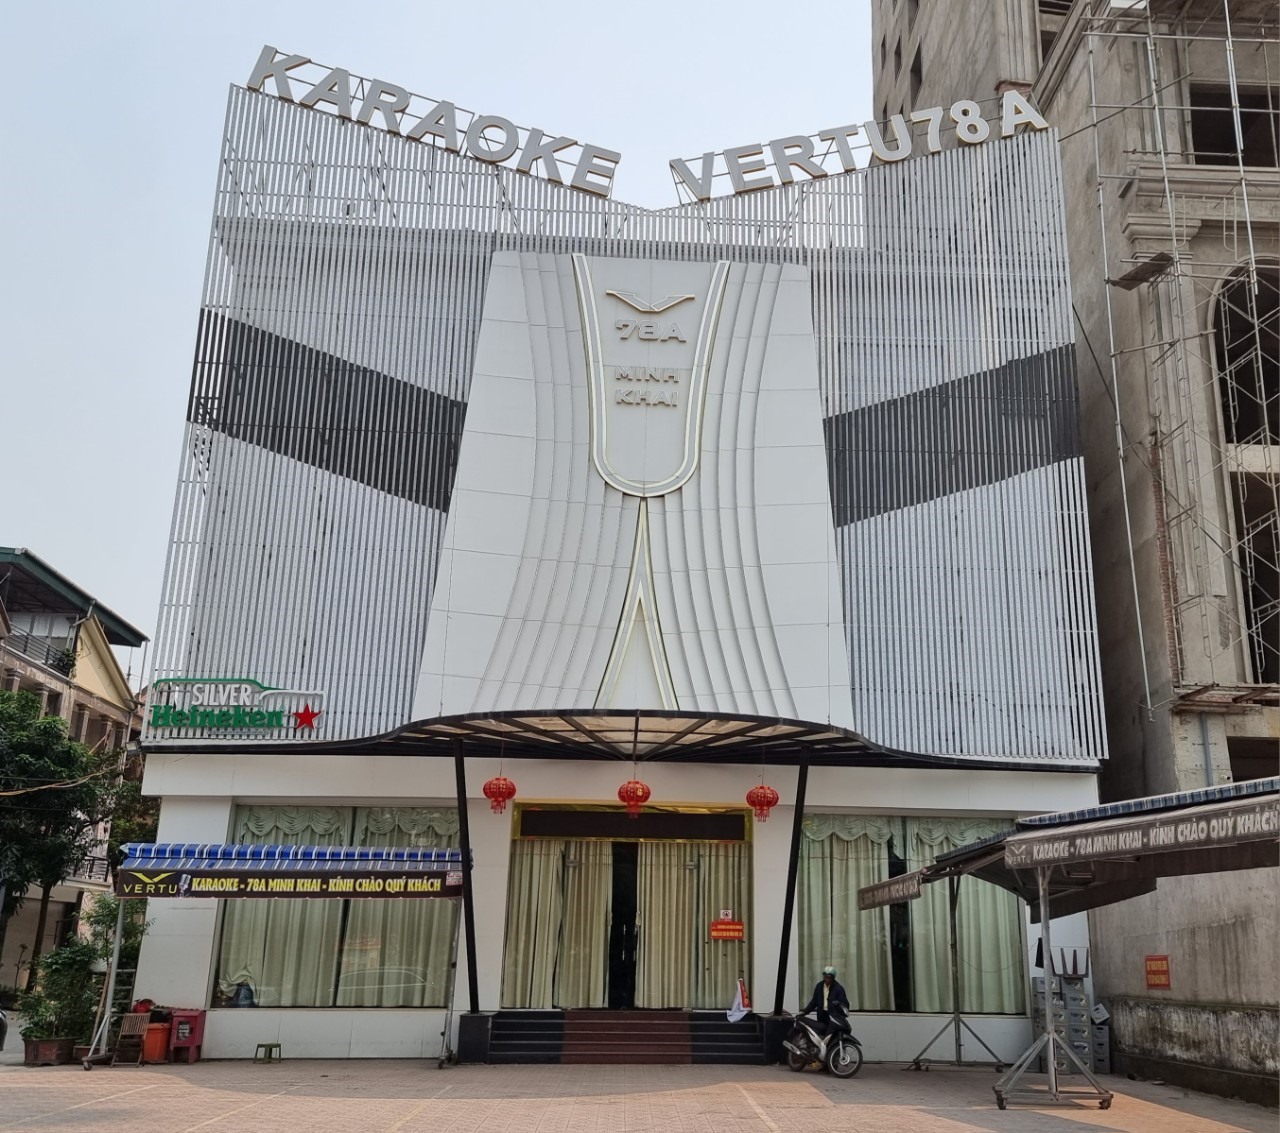 Cơ sở kinh doanh karaoke tại số 78 Minh Khaii - TP Vinh dừng hoạt động nhiều tháng nay. Ảnh: Quang Đại